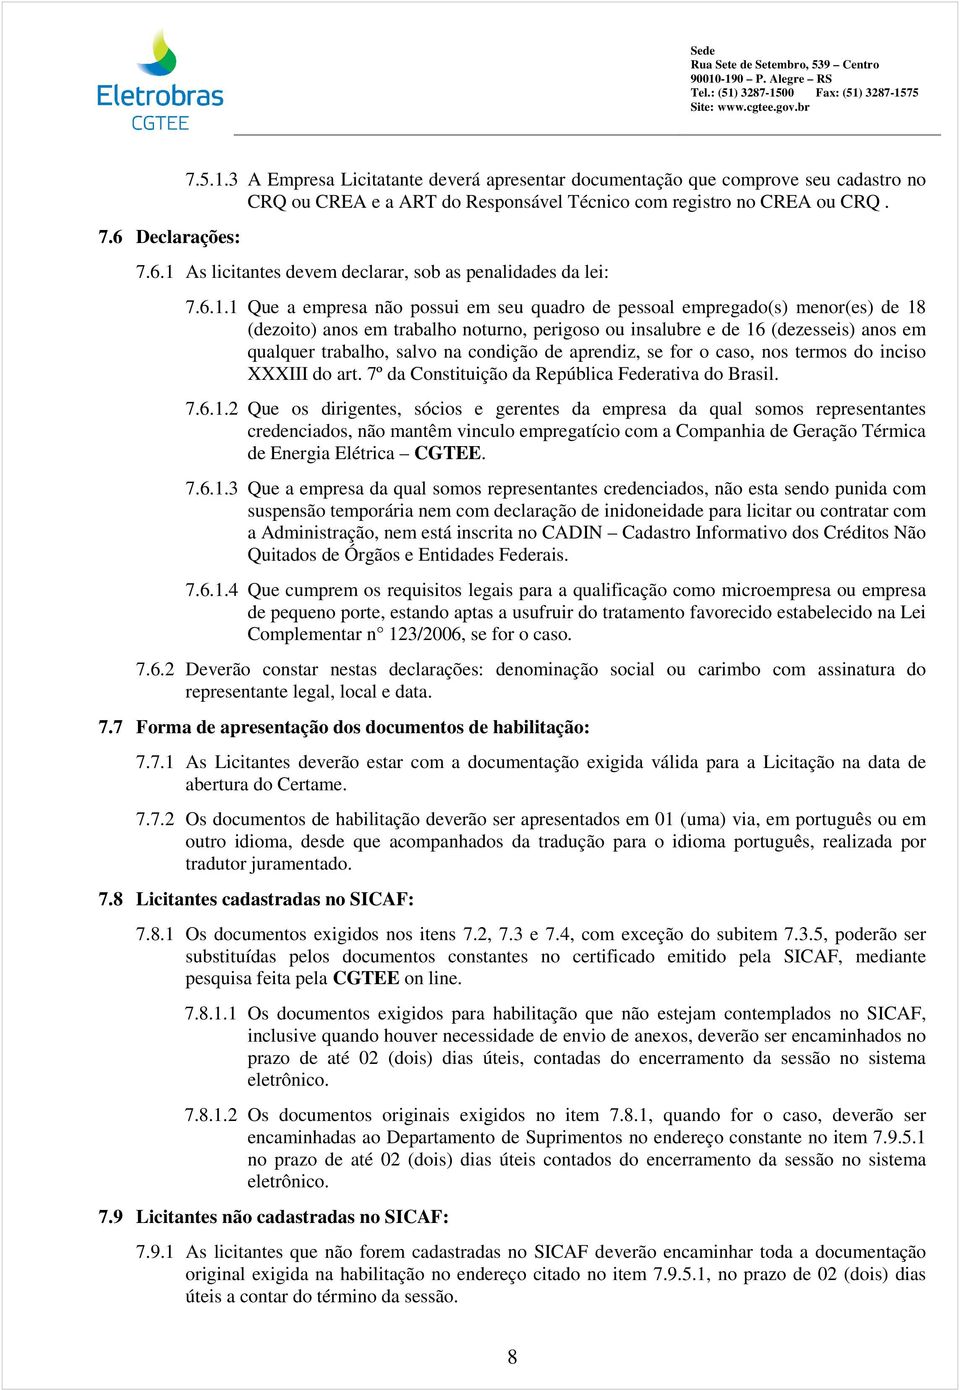 condição de aprendiz, se for o caso, nos termos do inciso XXXIII do art. 7º da Constituição da República Federativa do Brasil. 7.6.1.